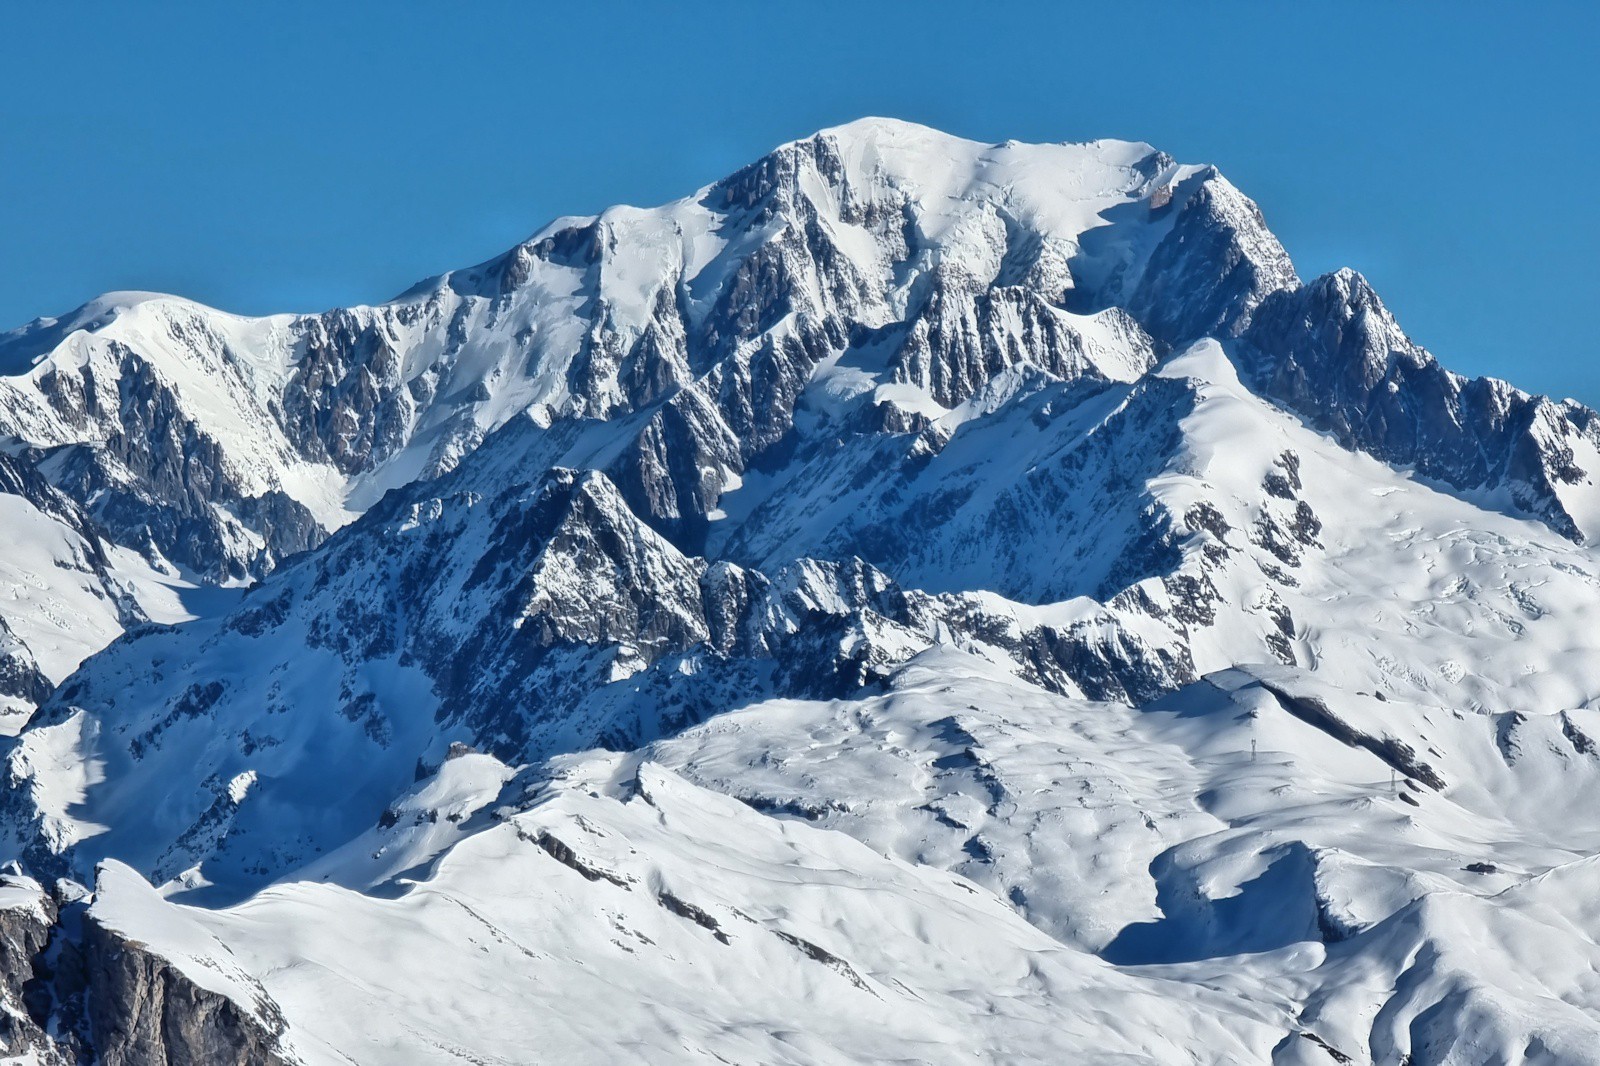 En arrière-plan de la «carte postale» trône le Mont-Blanc.